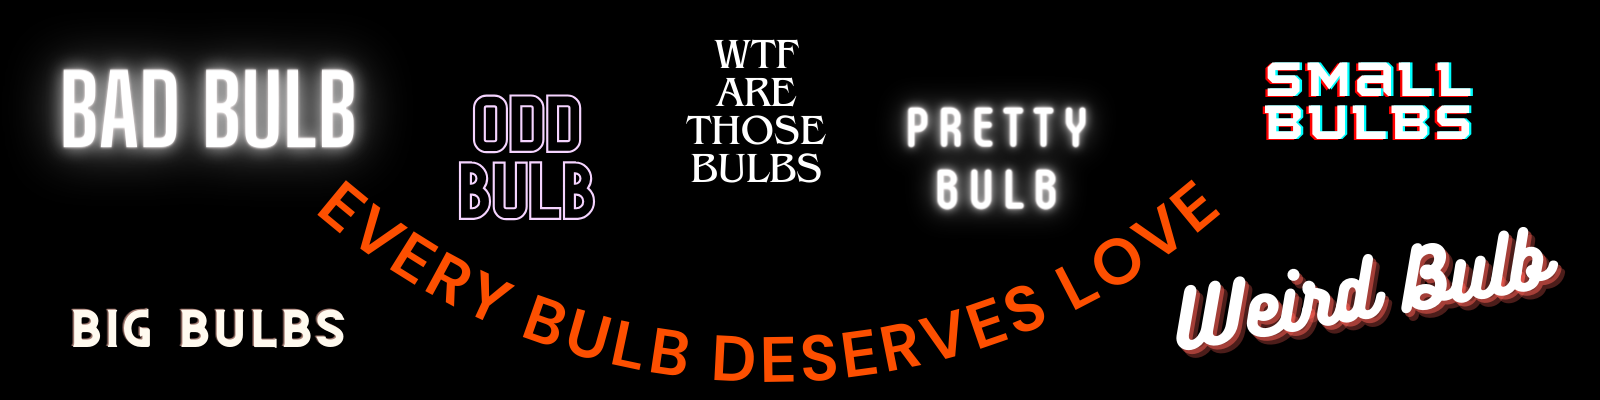 bulb deserves love